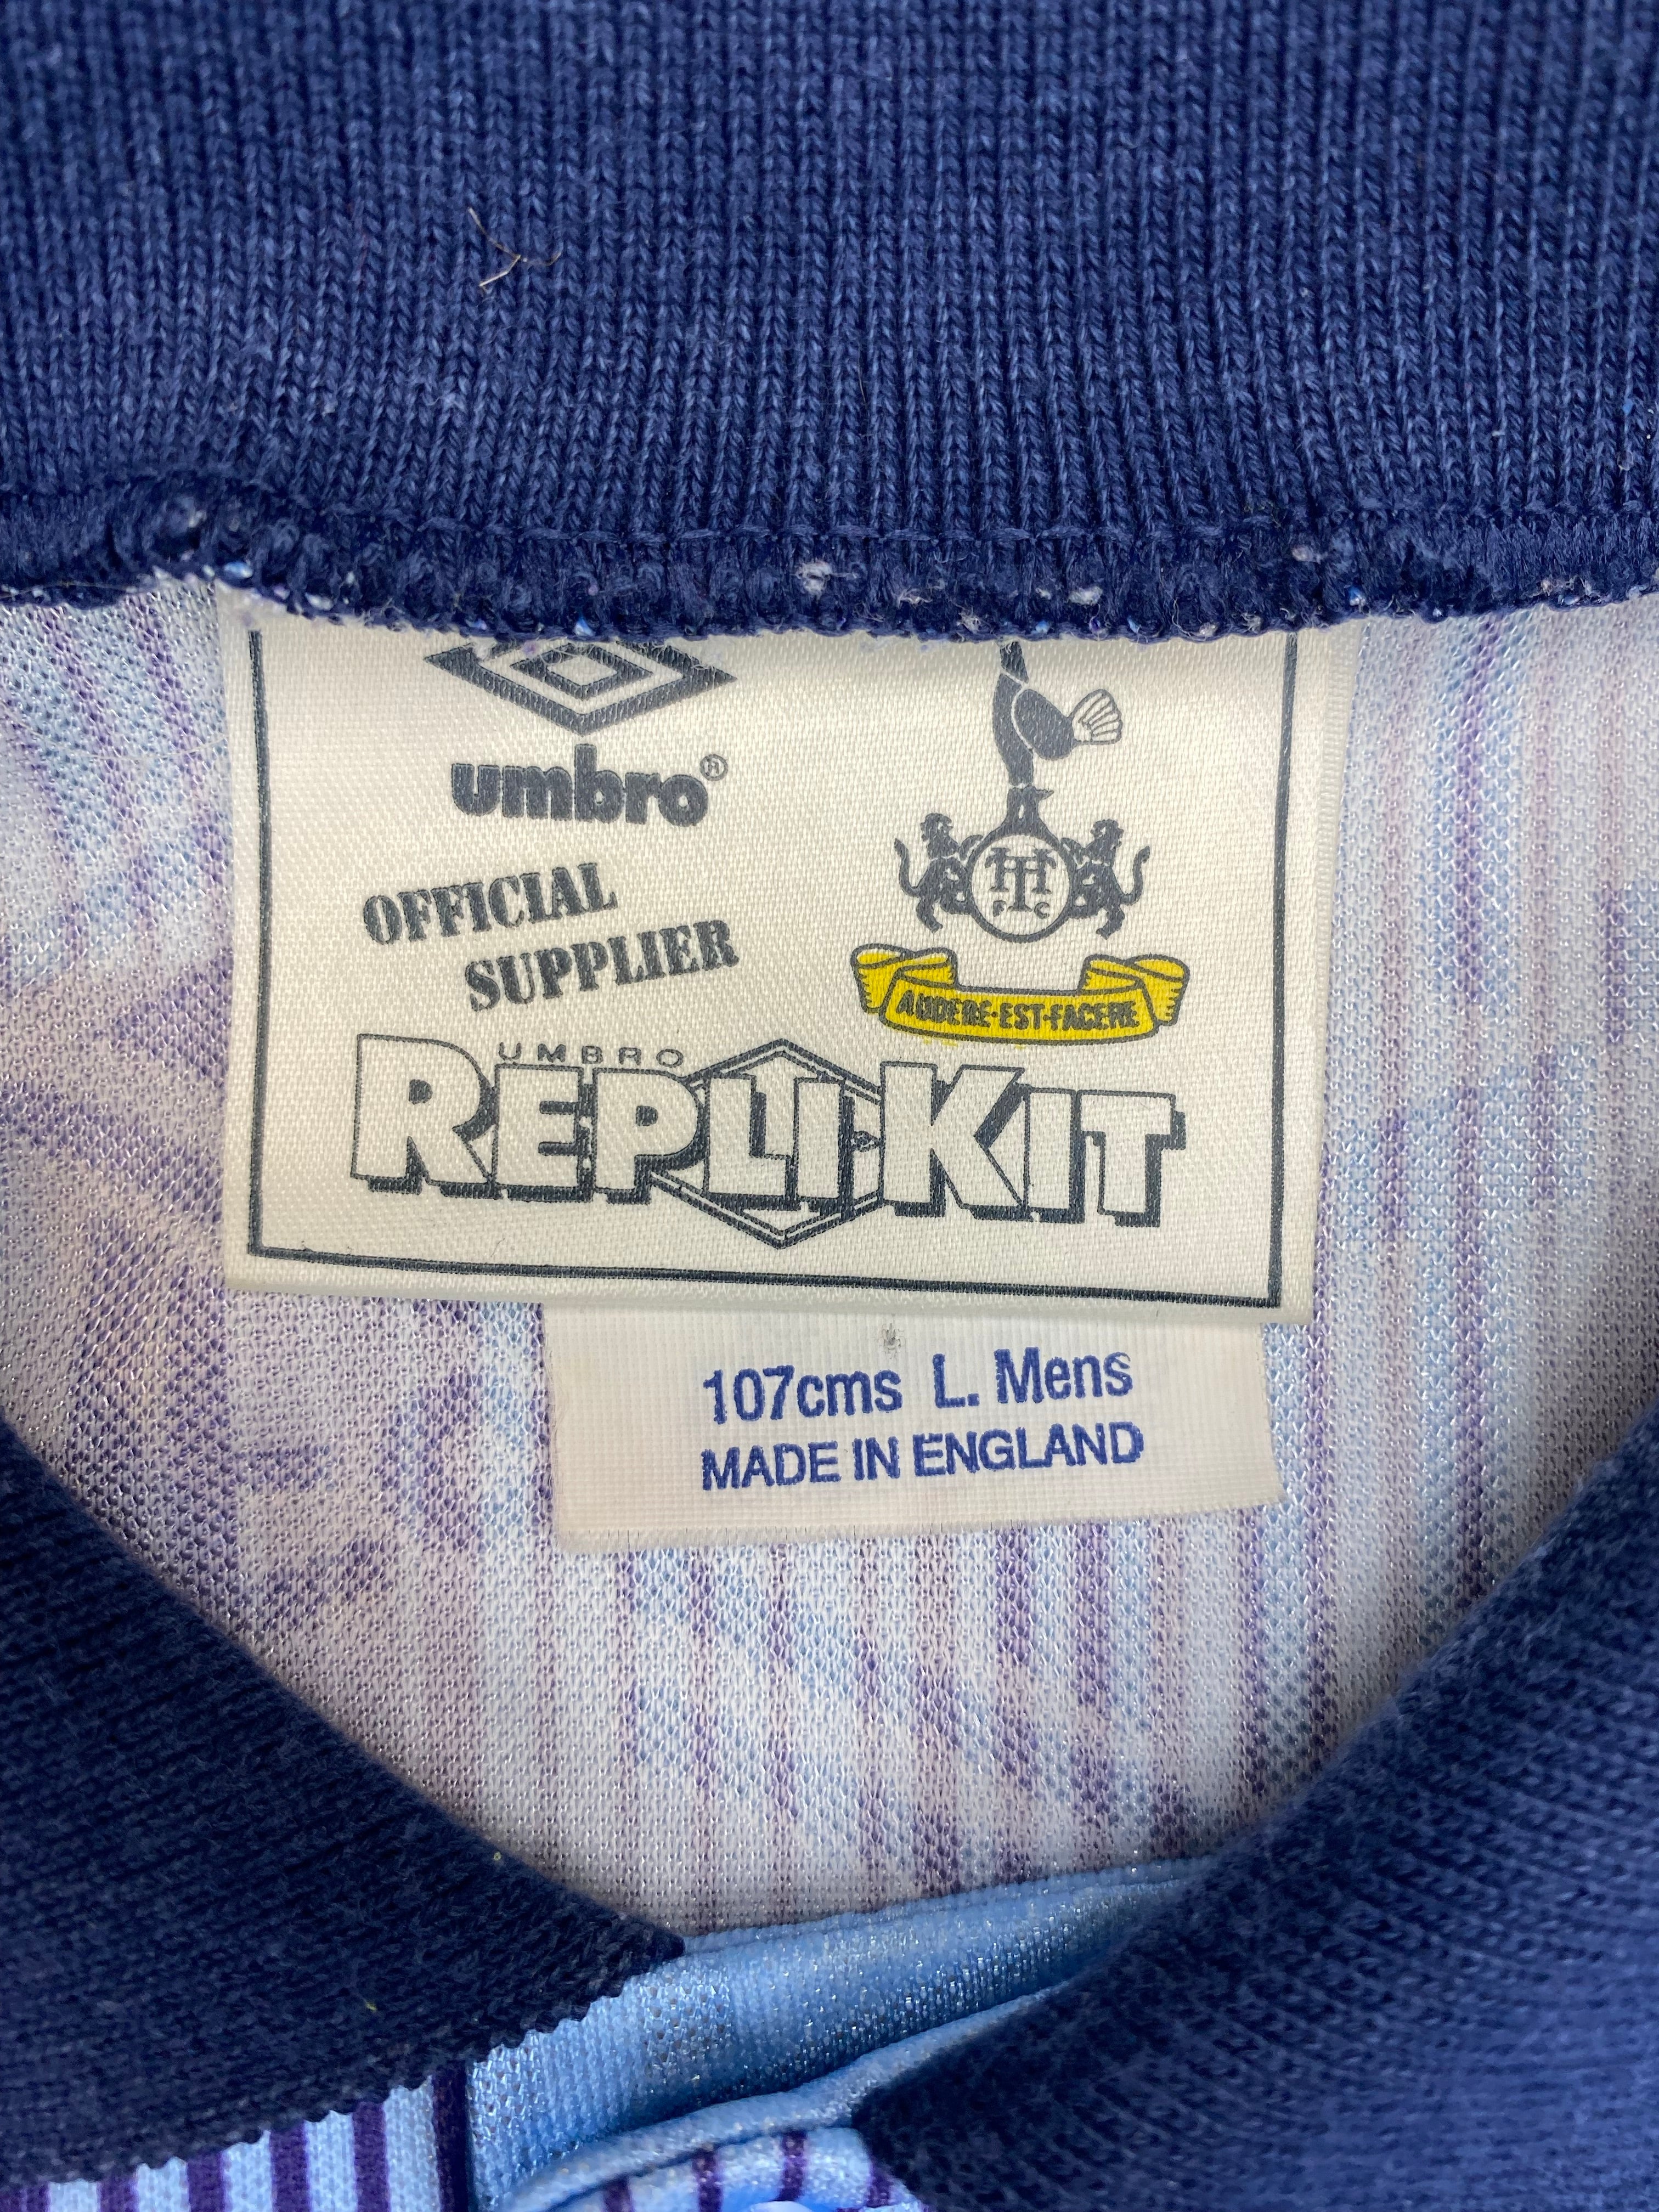 Authentic 1991-94 Tottenham Hotspur shirt Anderton 9, Umbro